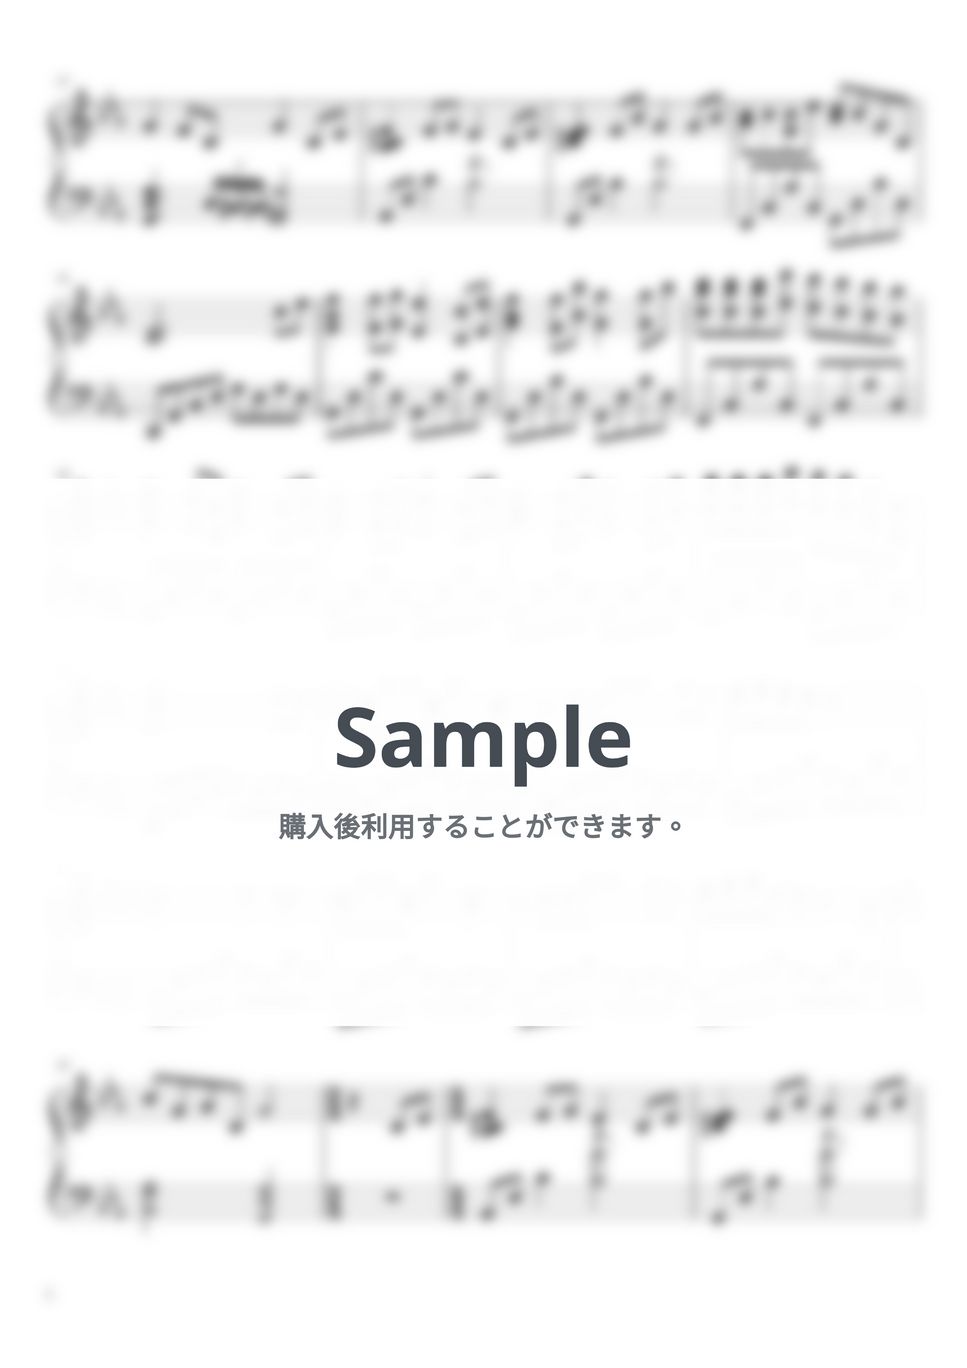 久石譲 - 風のとおり道 (ピアノ上級ソロ) by pianon